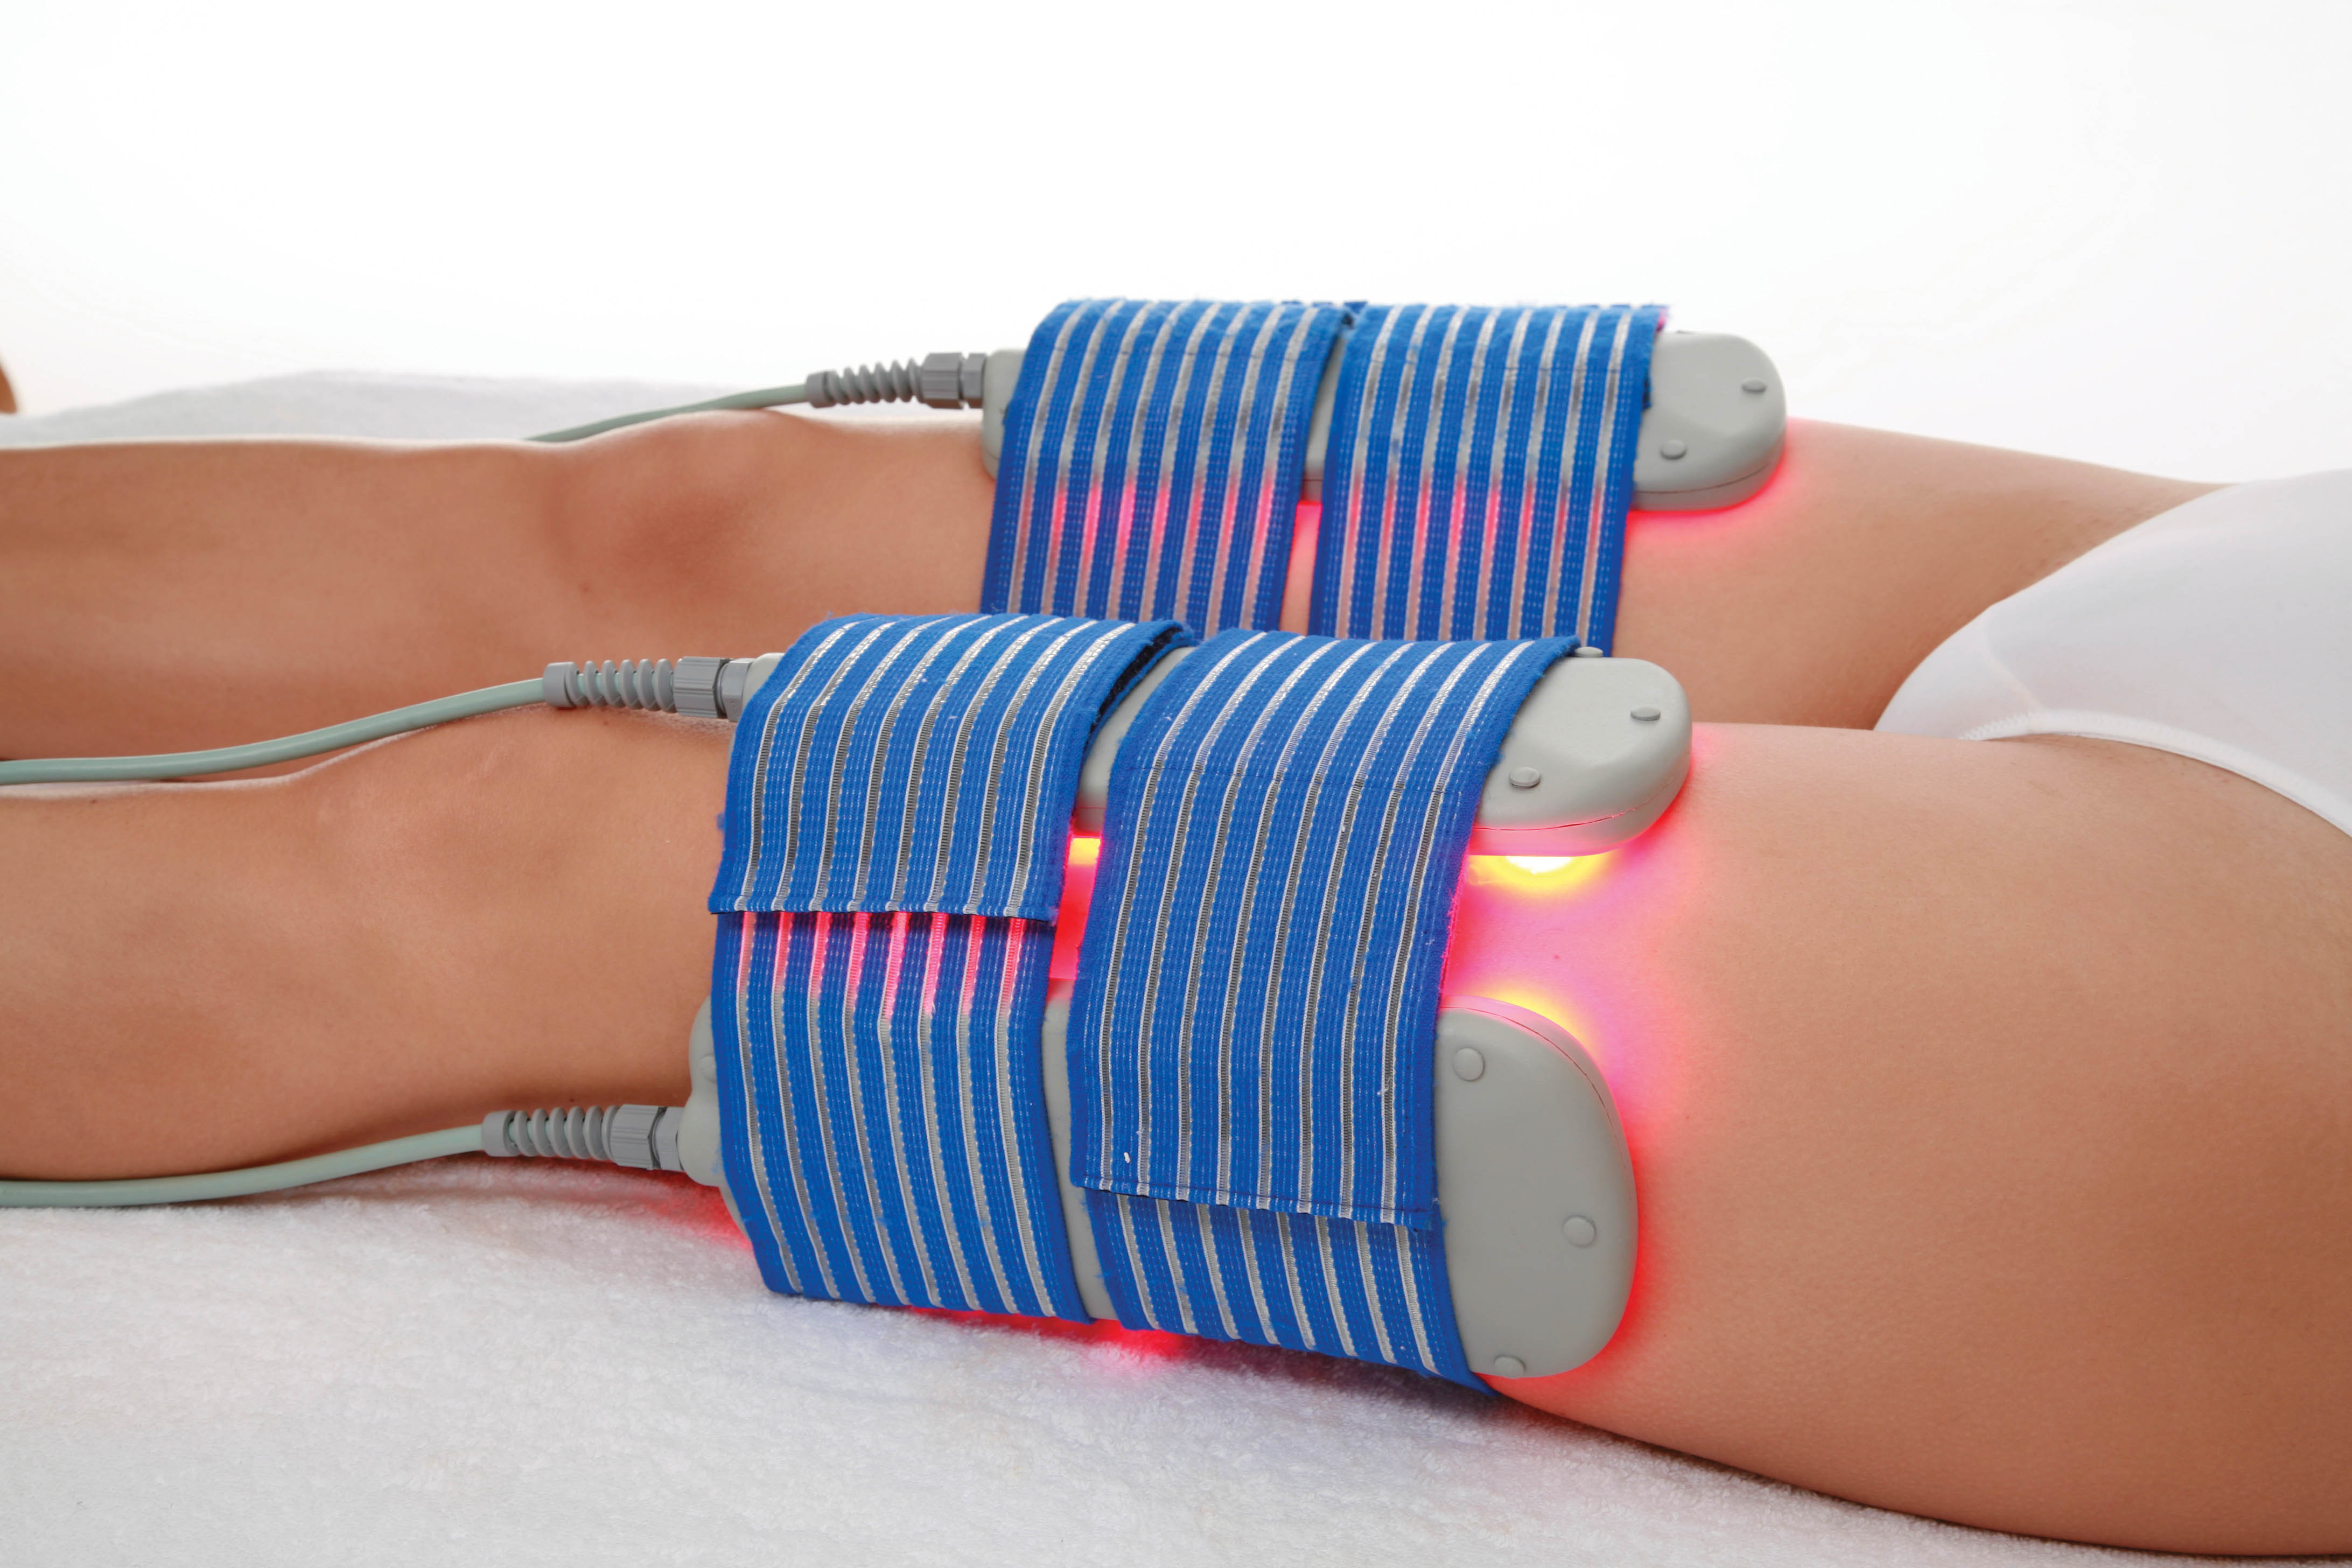 Beneficios de la electroterapia en tratamientos de rehabilitación